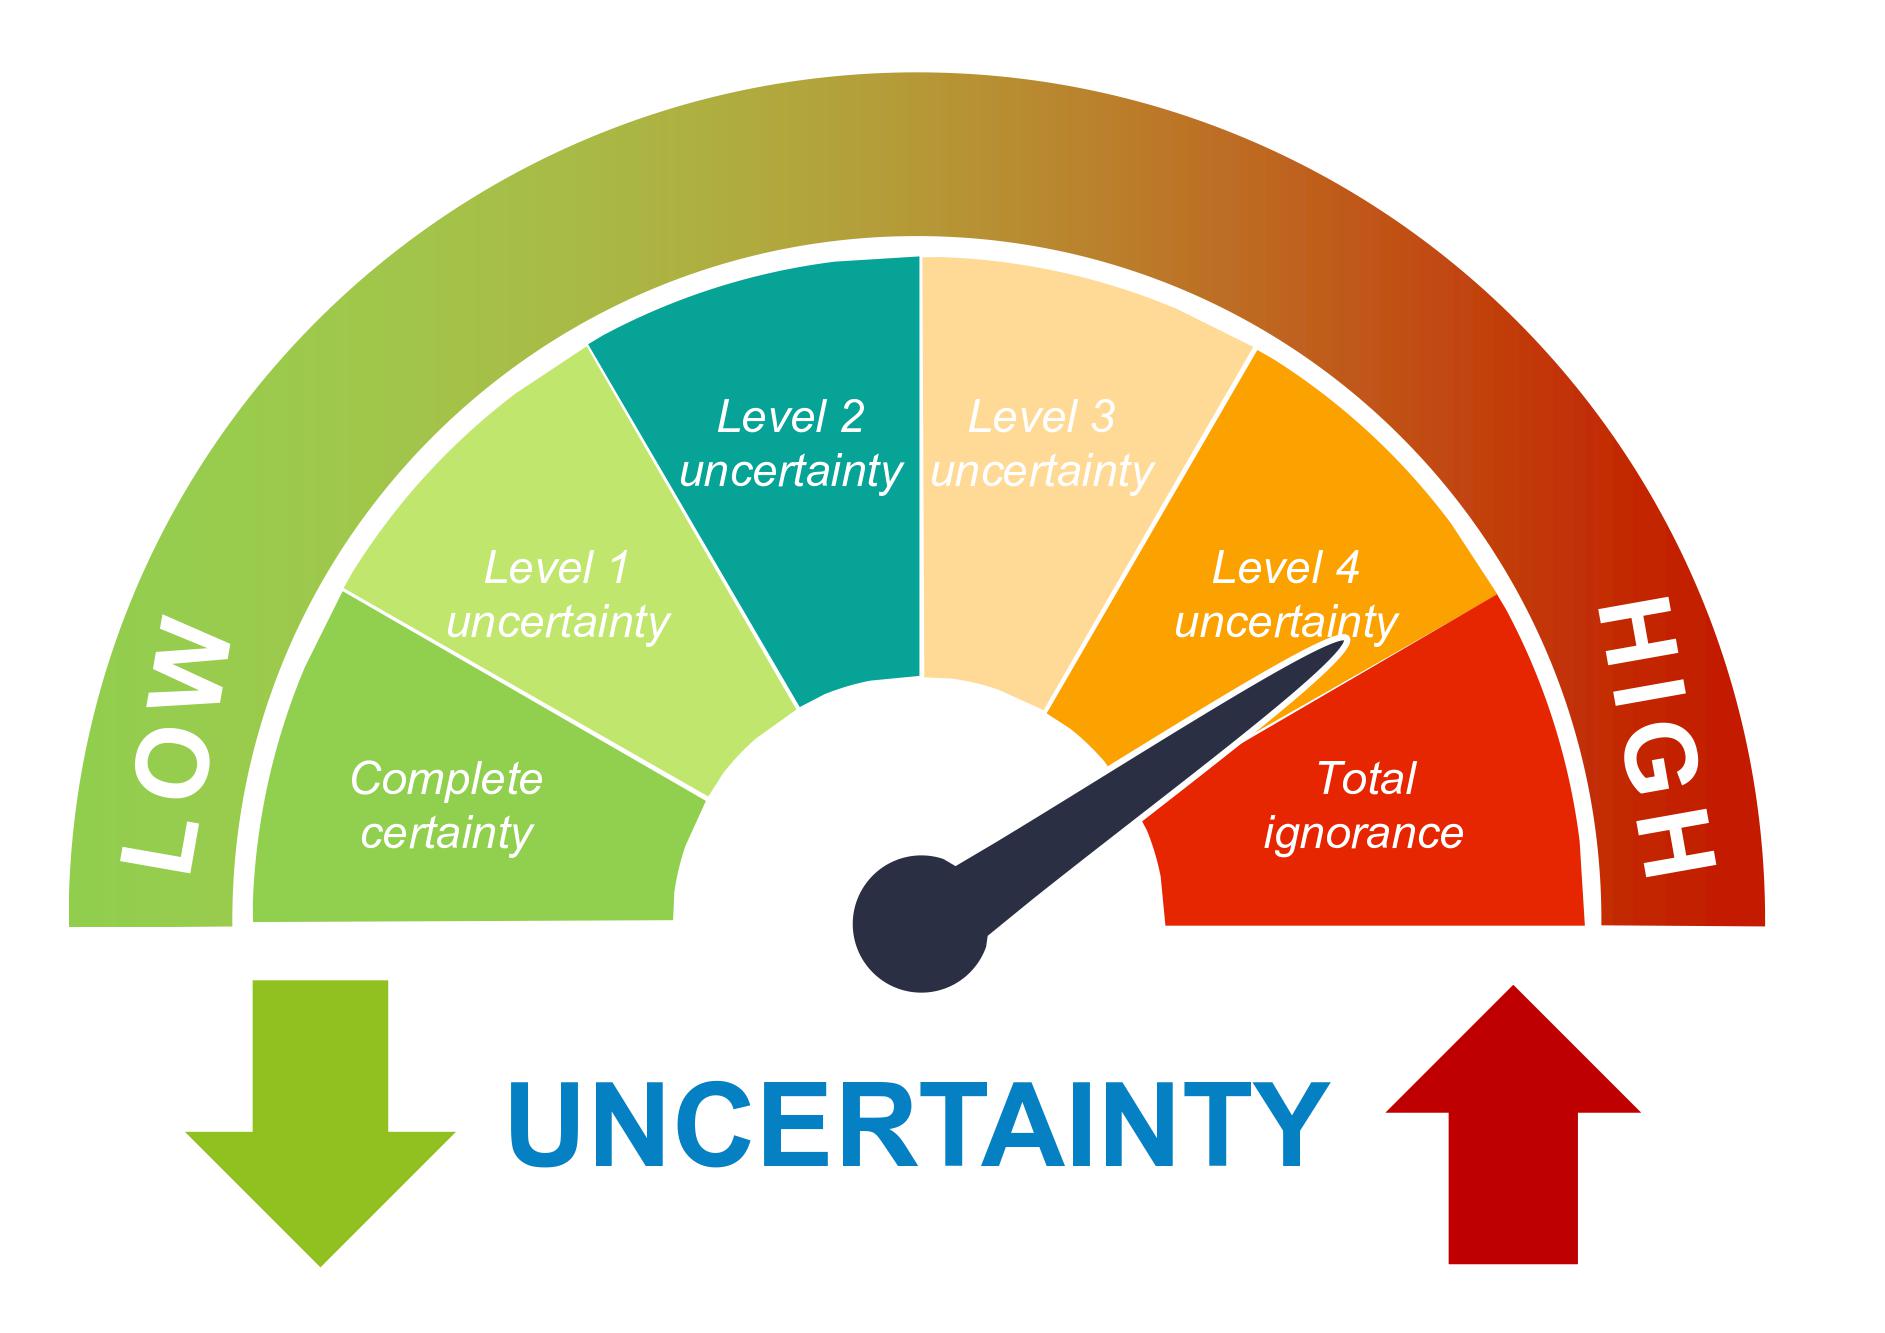 Figure 1: Uncertainty spectrum